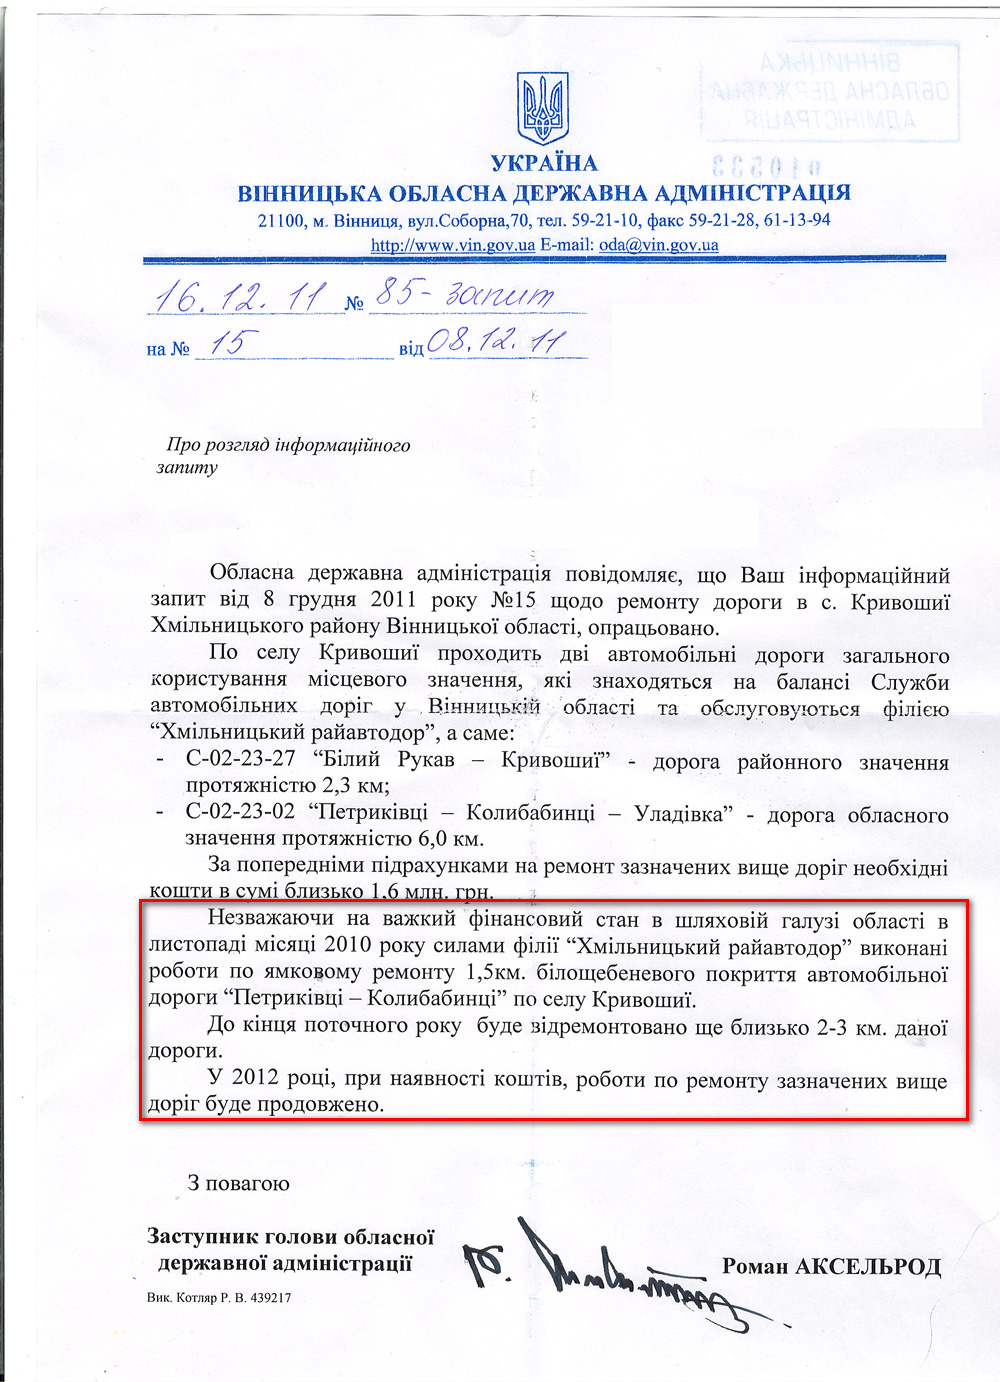 Письмо Заместителя председателя Винницкой областной государственной администрации Романа Аксельрода